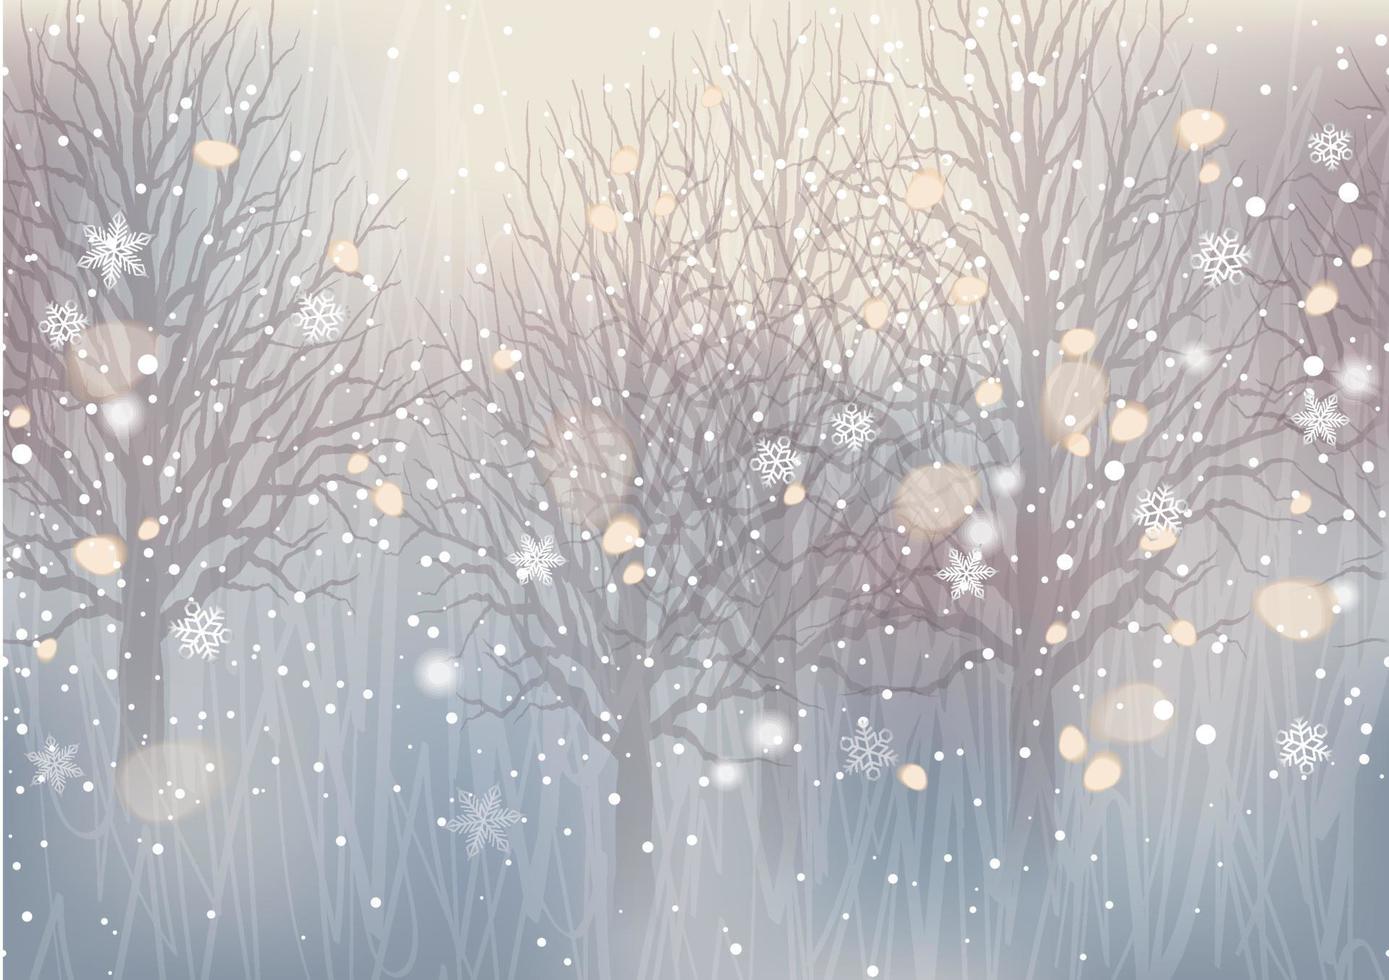 sömlös abstrakt vinterskog med vackra gnistrande ljus. vektor jul bakgrundsillustration. horisontellt repeterbar.